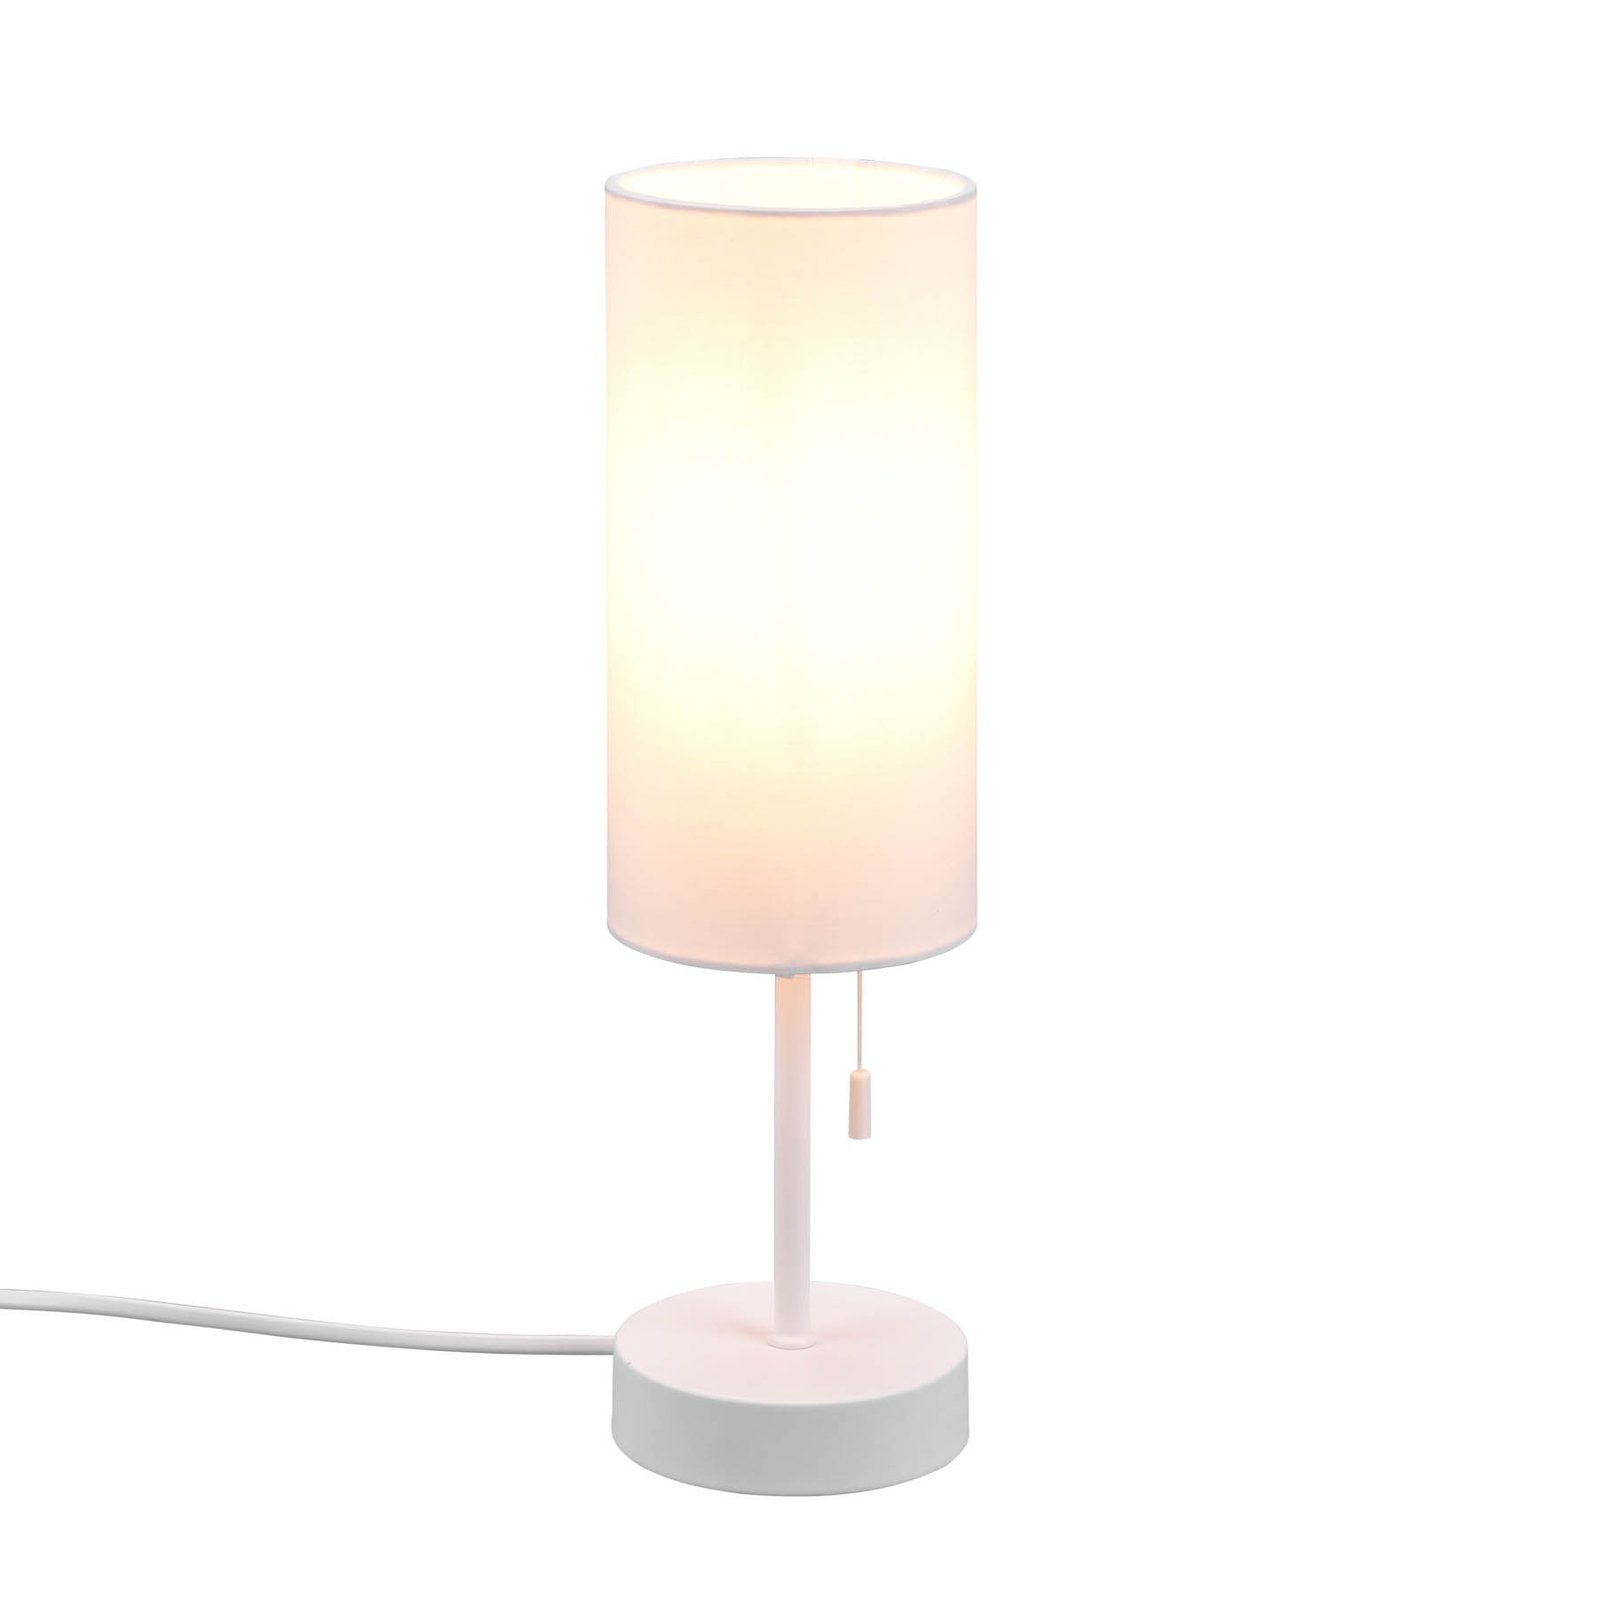 Bordlampe Jaro med USB-tilkobling, hvit/hvit